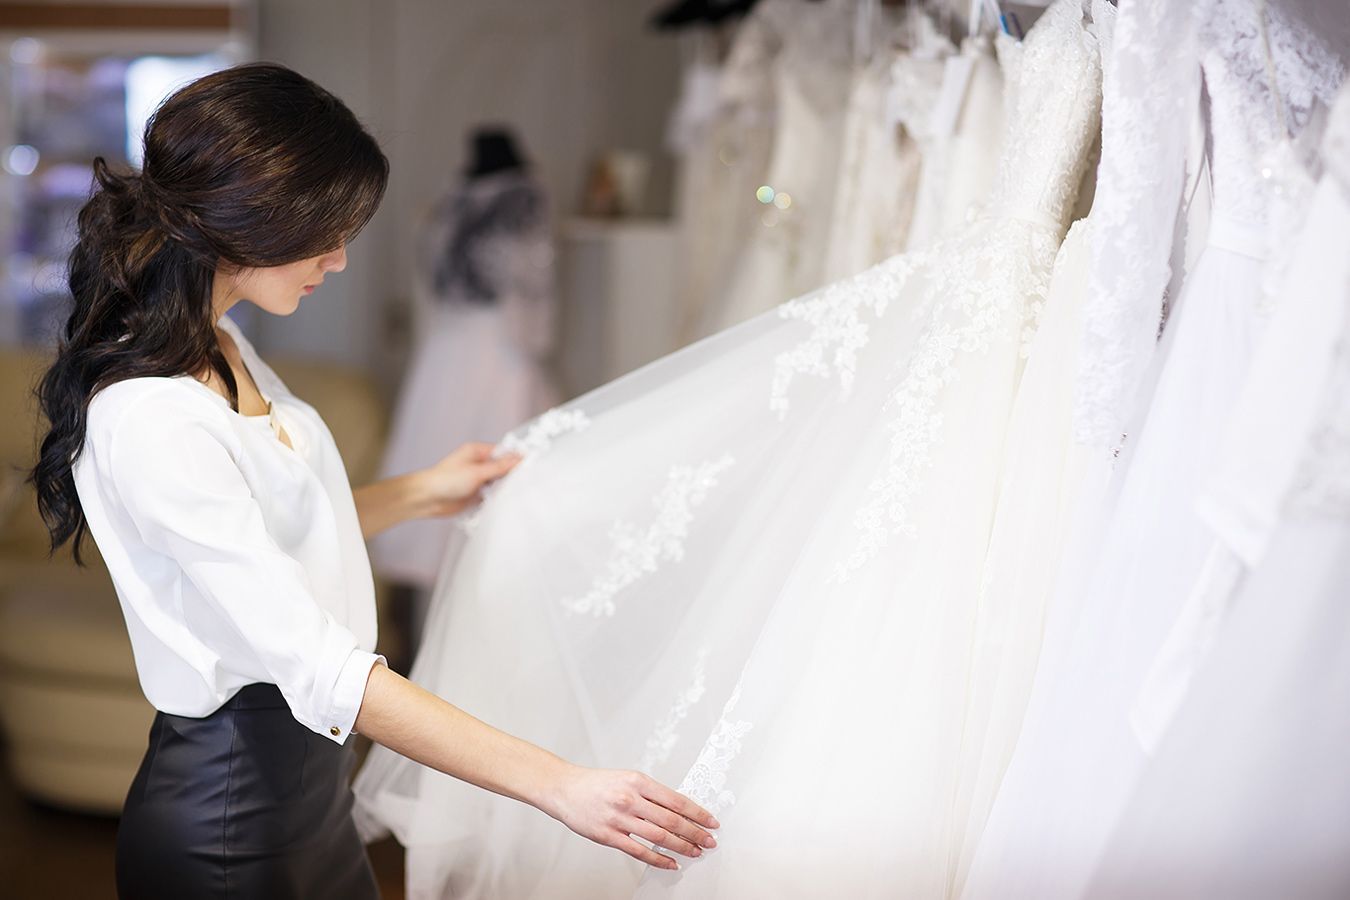 Cómo elegir el vestido de novia sin salirse del presupuesto? - Woman